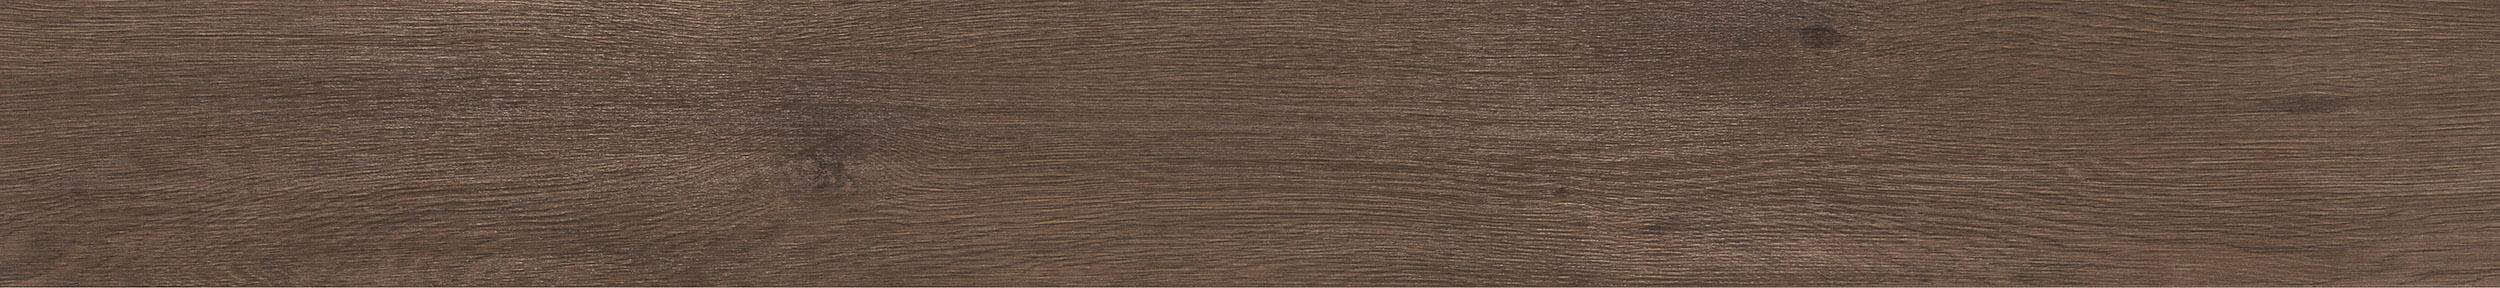 Panele podłogowe SWISS KRONO PLATINIUM MARINE dąb Adriatyk 3793 gr.10mm, AC4, 4V (1opk.=7szt.=1,536m2) (Zdjęcie 7)